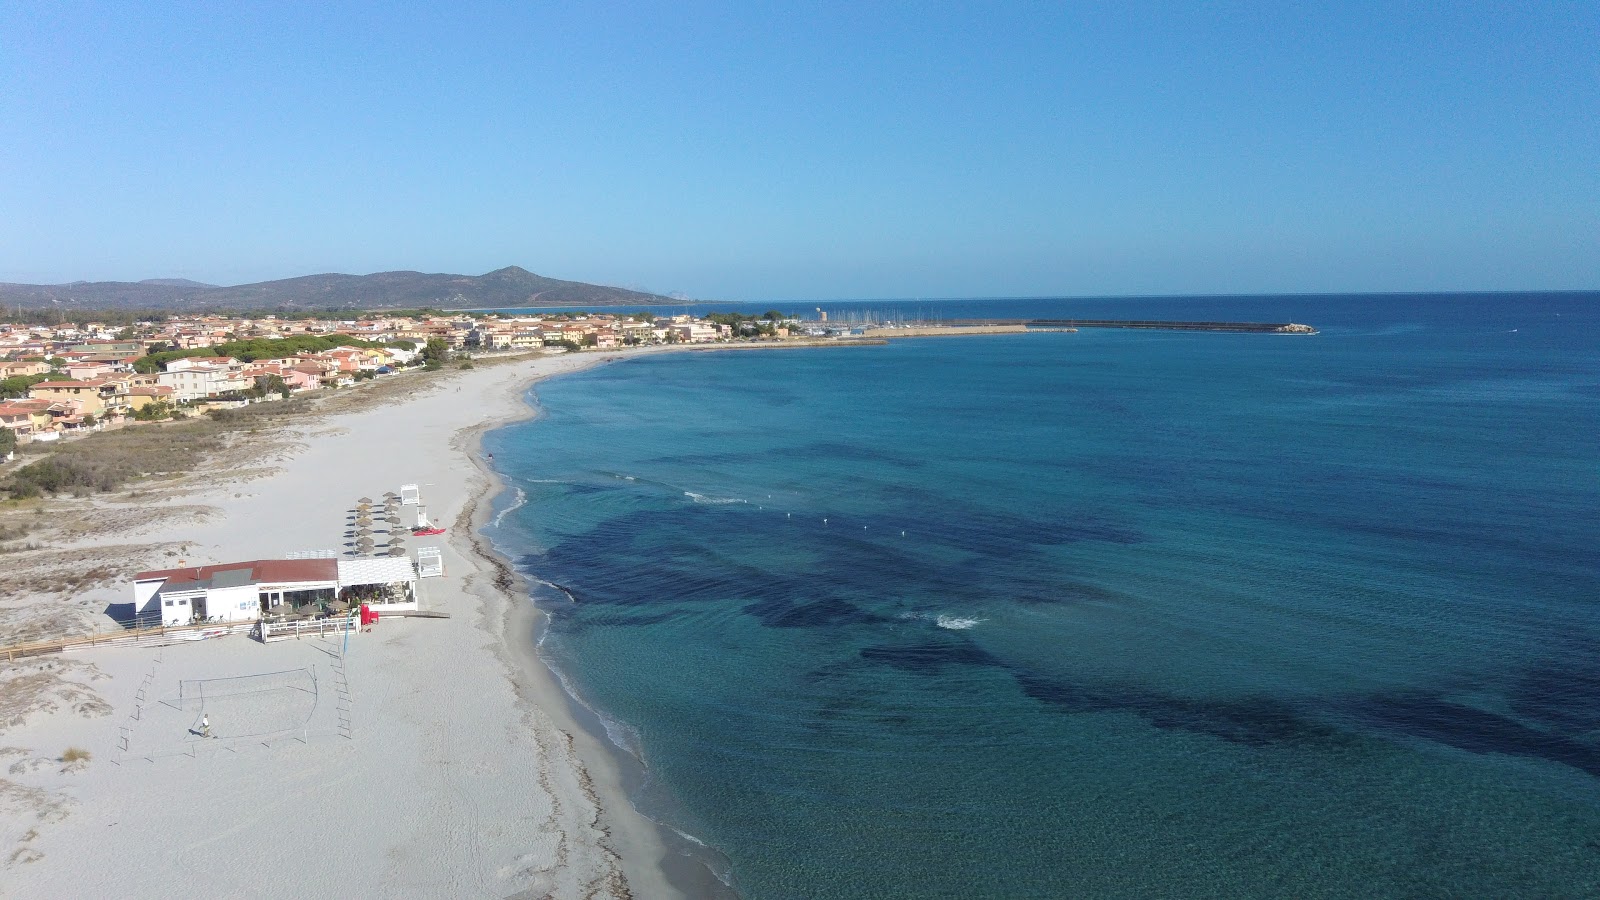 Foto av Spiaggia La Caletta med turkos rent vatten yta